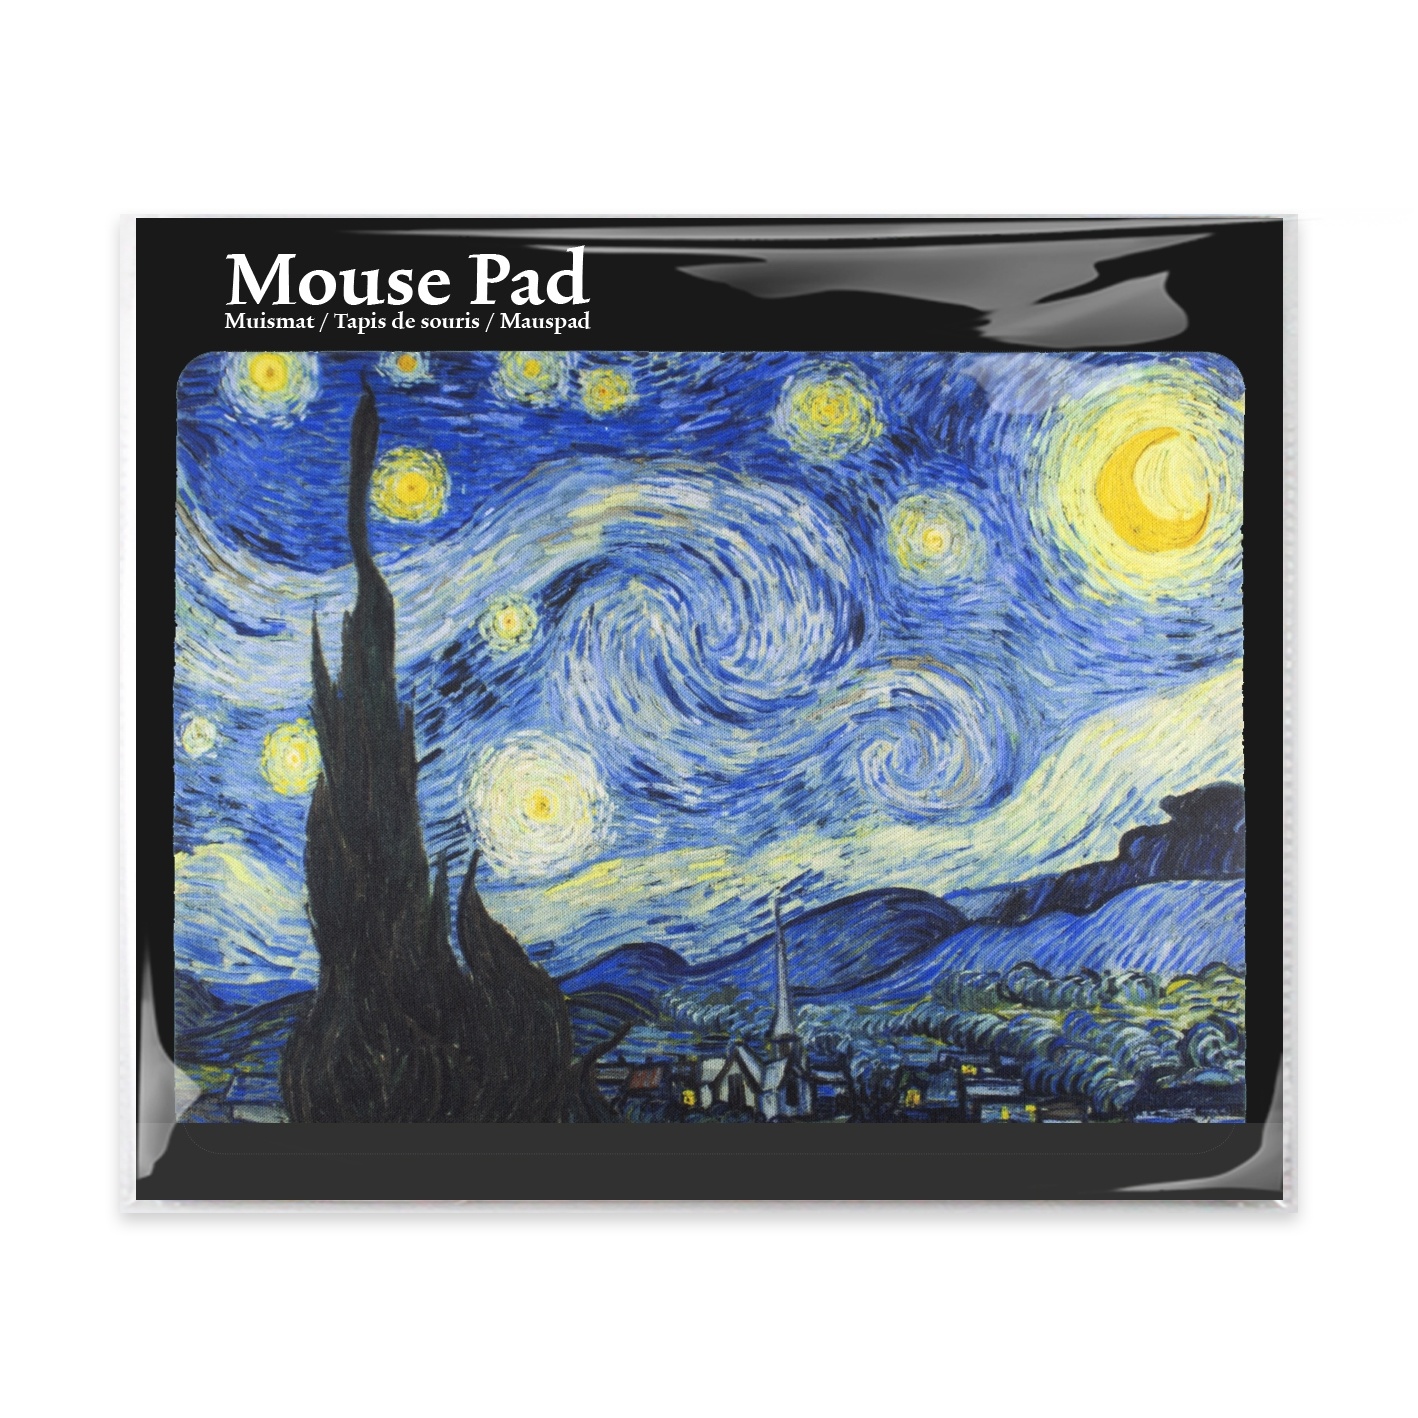 Tapis de souris décoratif Van Gogh - Tapis peinture - Univers souris